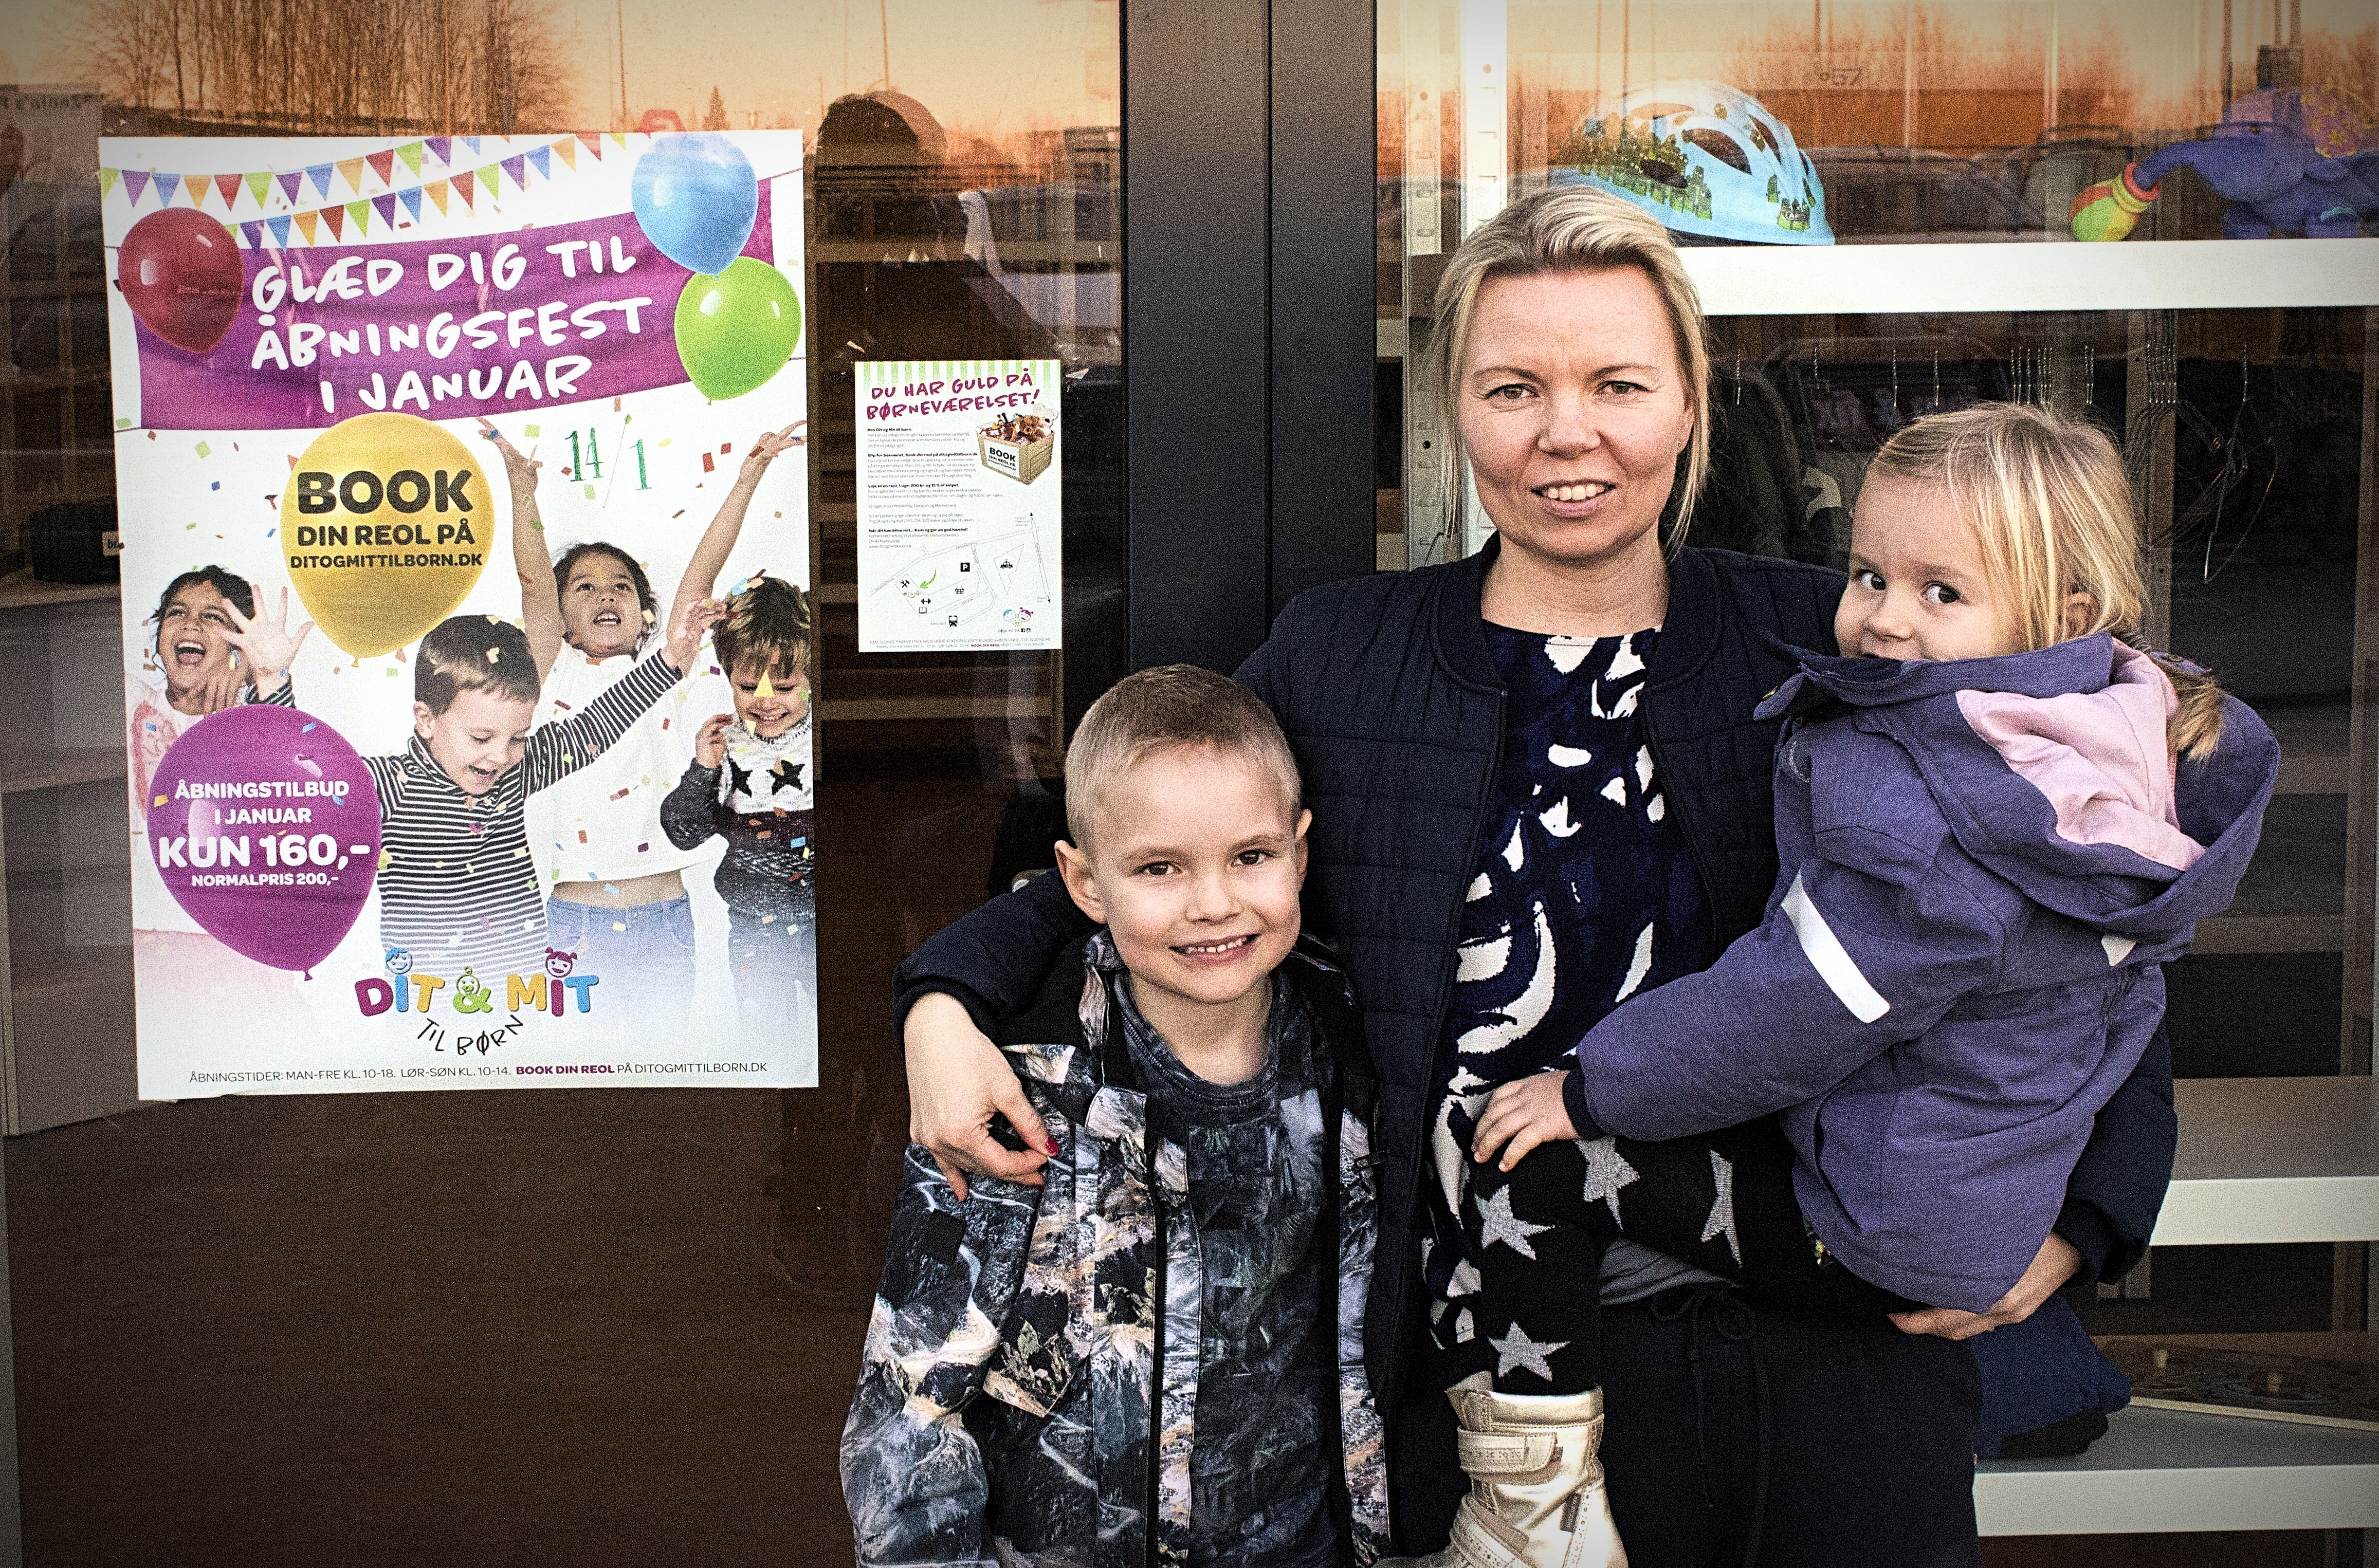 “Dit & Mit til børn” – mor til tre bag nyt bæredygtigt koncept i Karlslunde